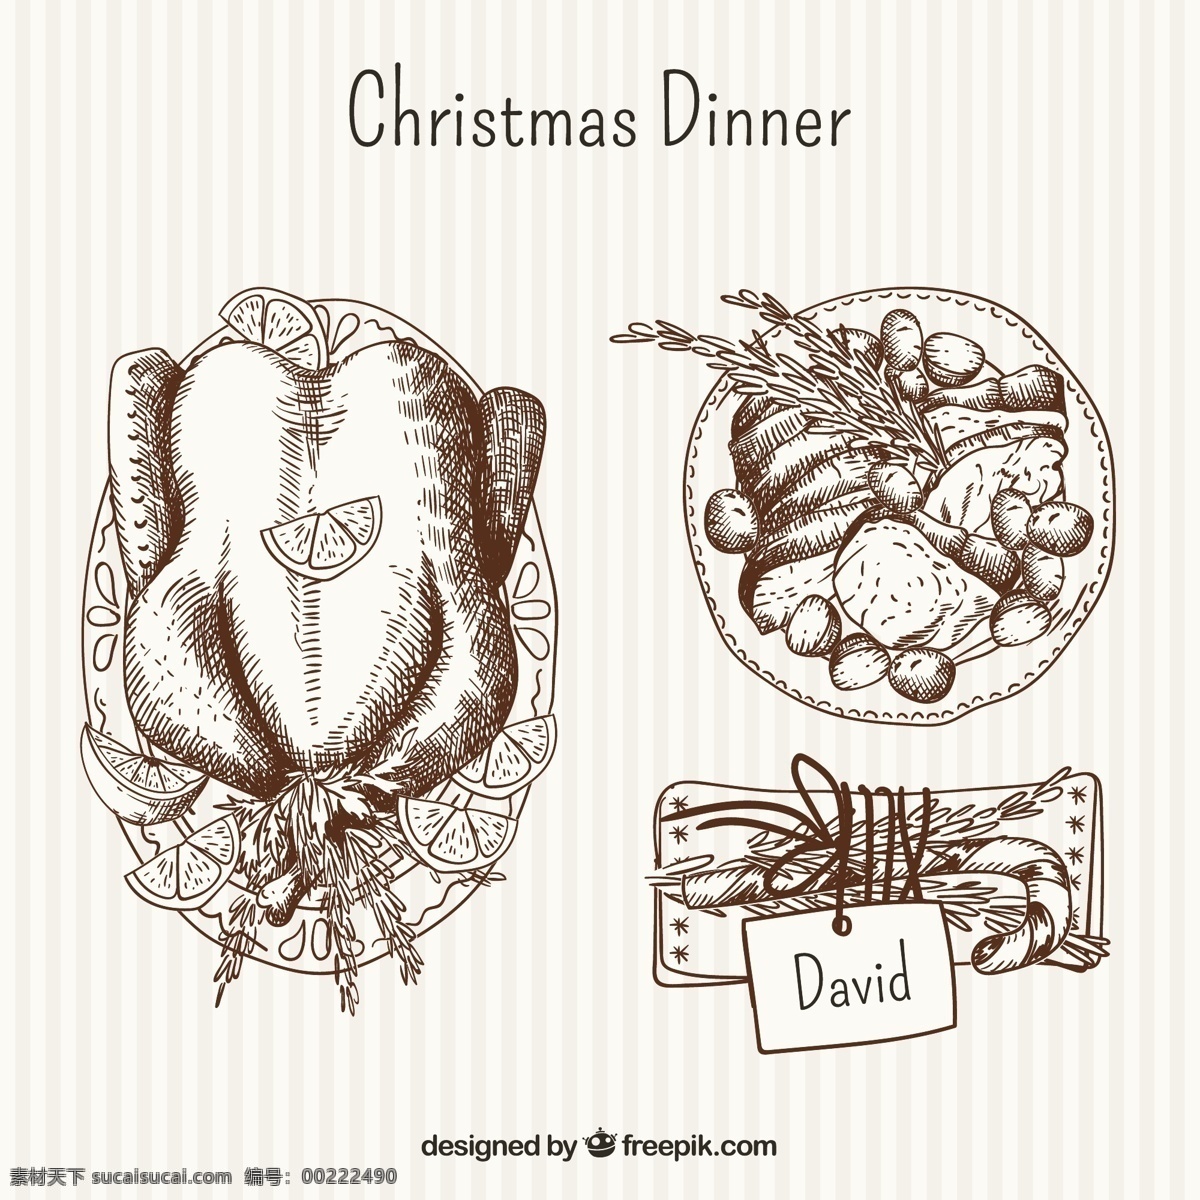 手 拉 美味 圣诞 大餐 食品 圣诞节 一方面 标签 圣诞快乐 冬天 手绘 快乐 糖果 庆祝 节日 素描 板 晚餐 火鸡 节日快乐 菜 吸引 圣诞节的标签 白色